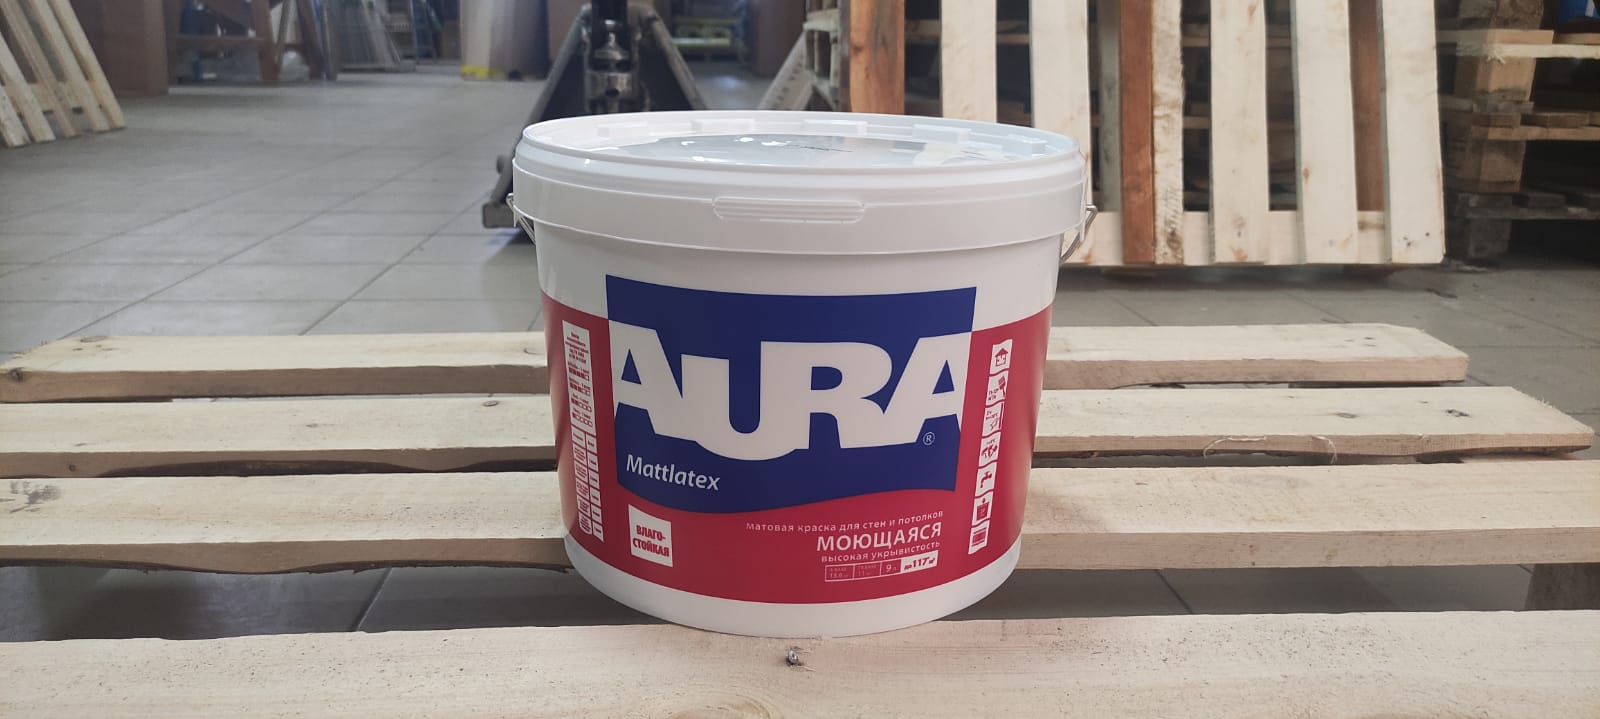 Краска моющаяся для стен и потолков AURA Mattlatex Interior / Аура Матлатекс 9 л (база А)